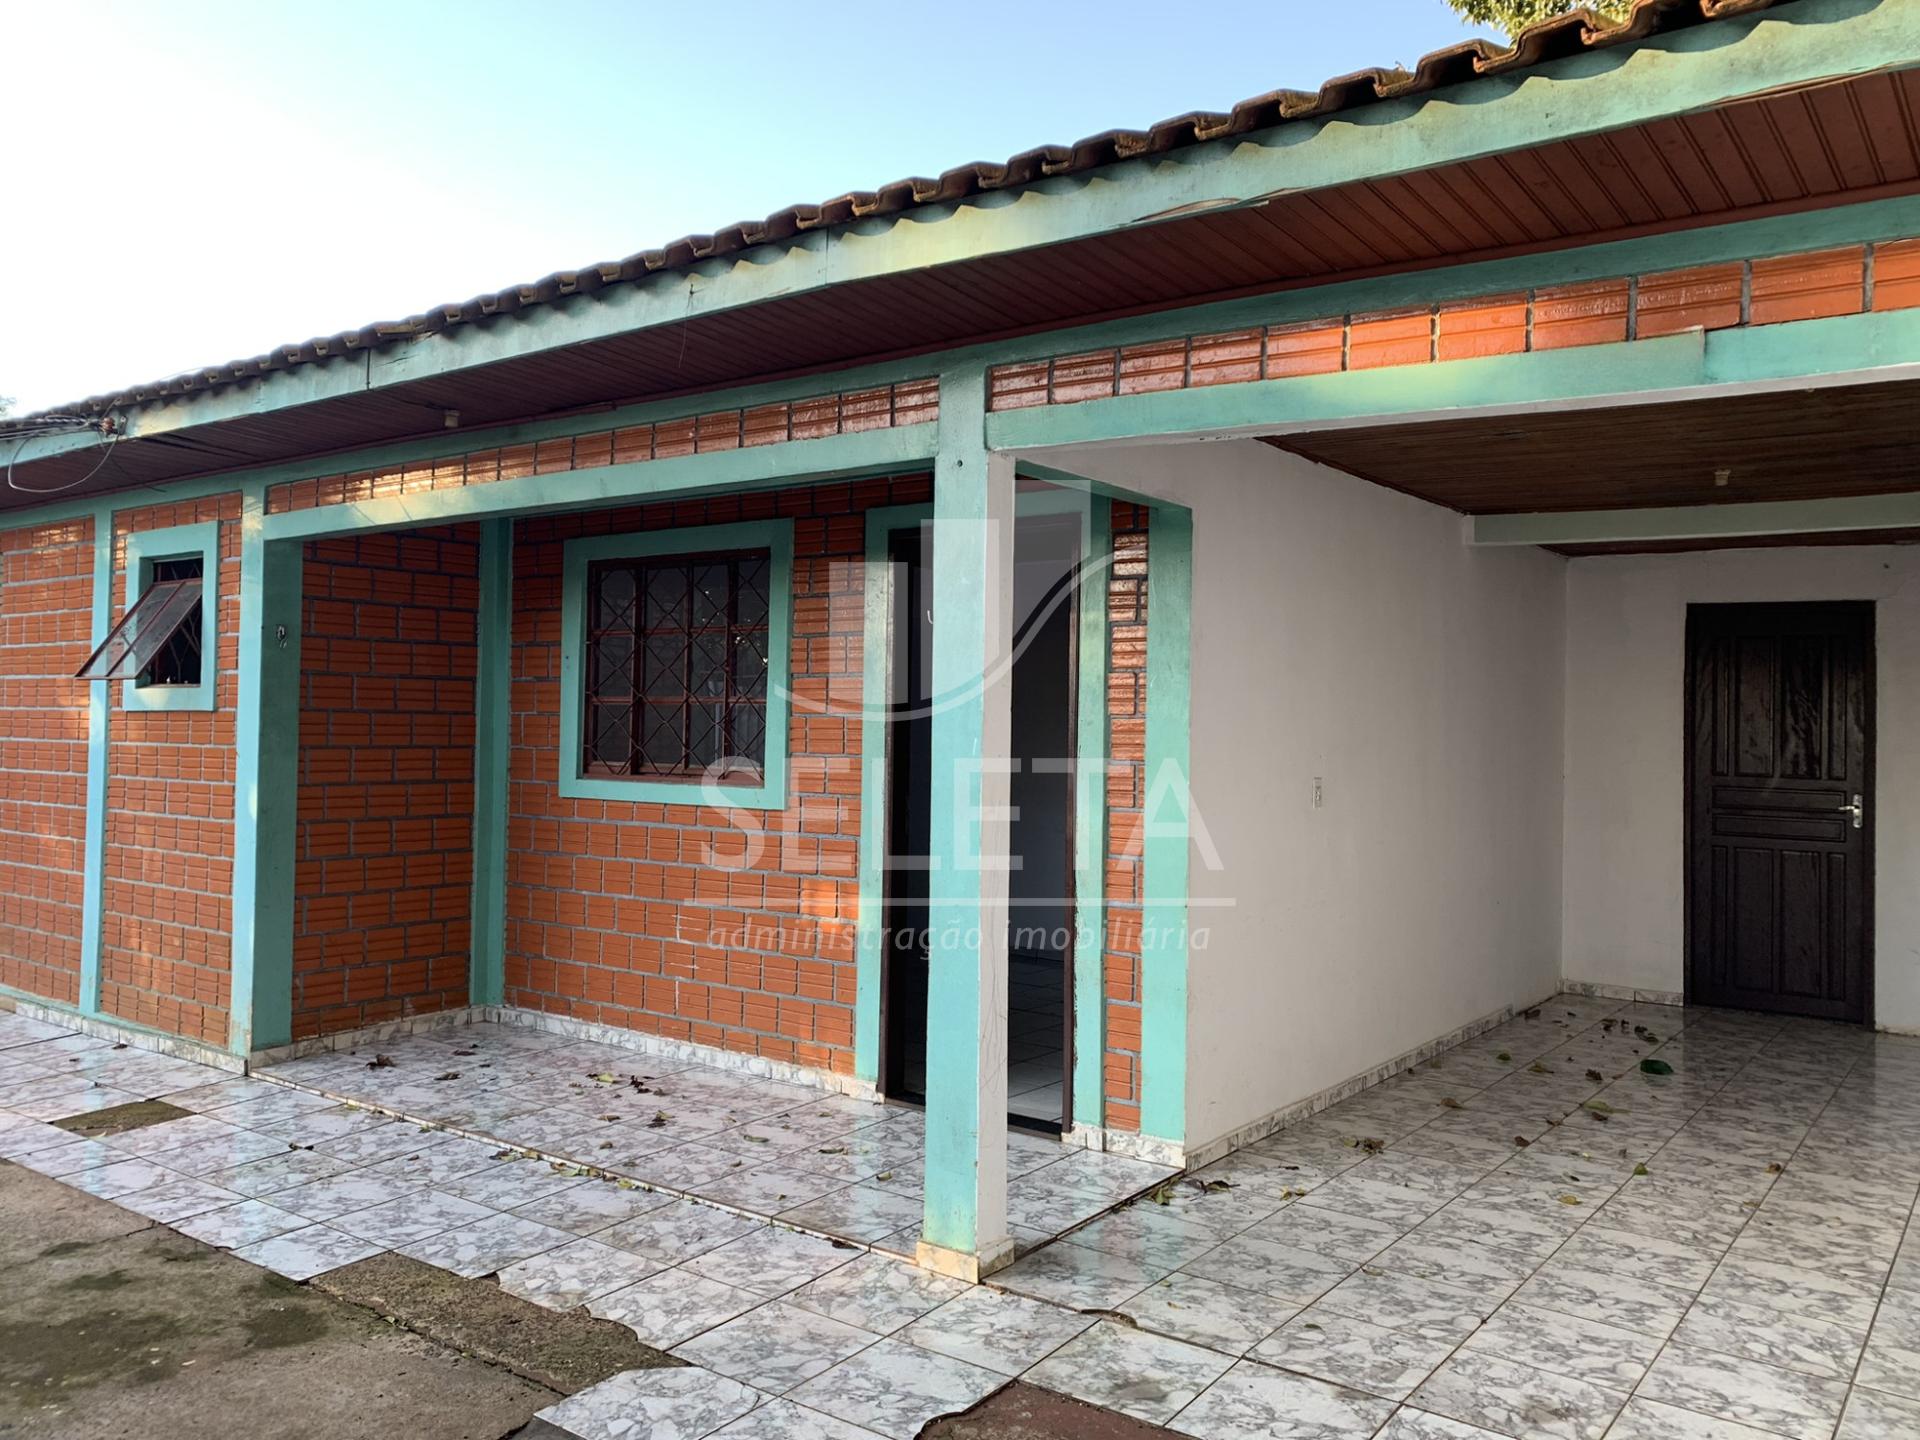 Casa à venda, terreno de 200m² Parque São Paulo, CASCAVEL - PR...